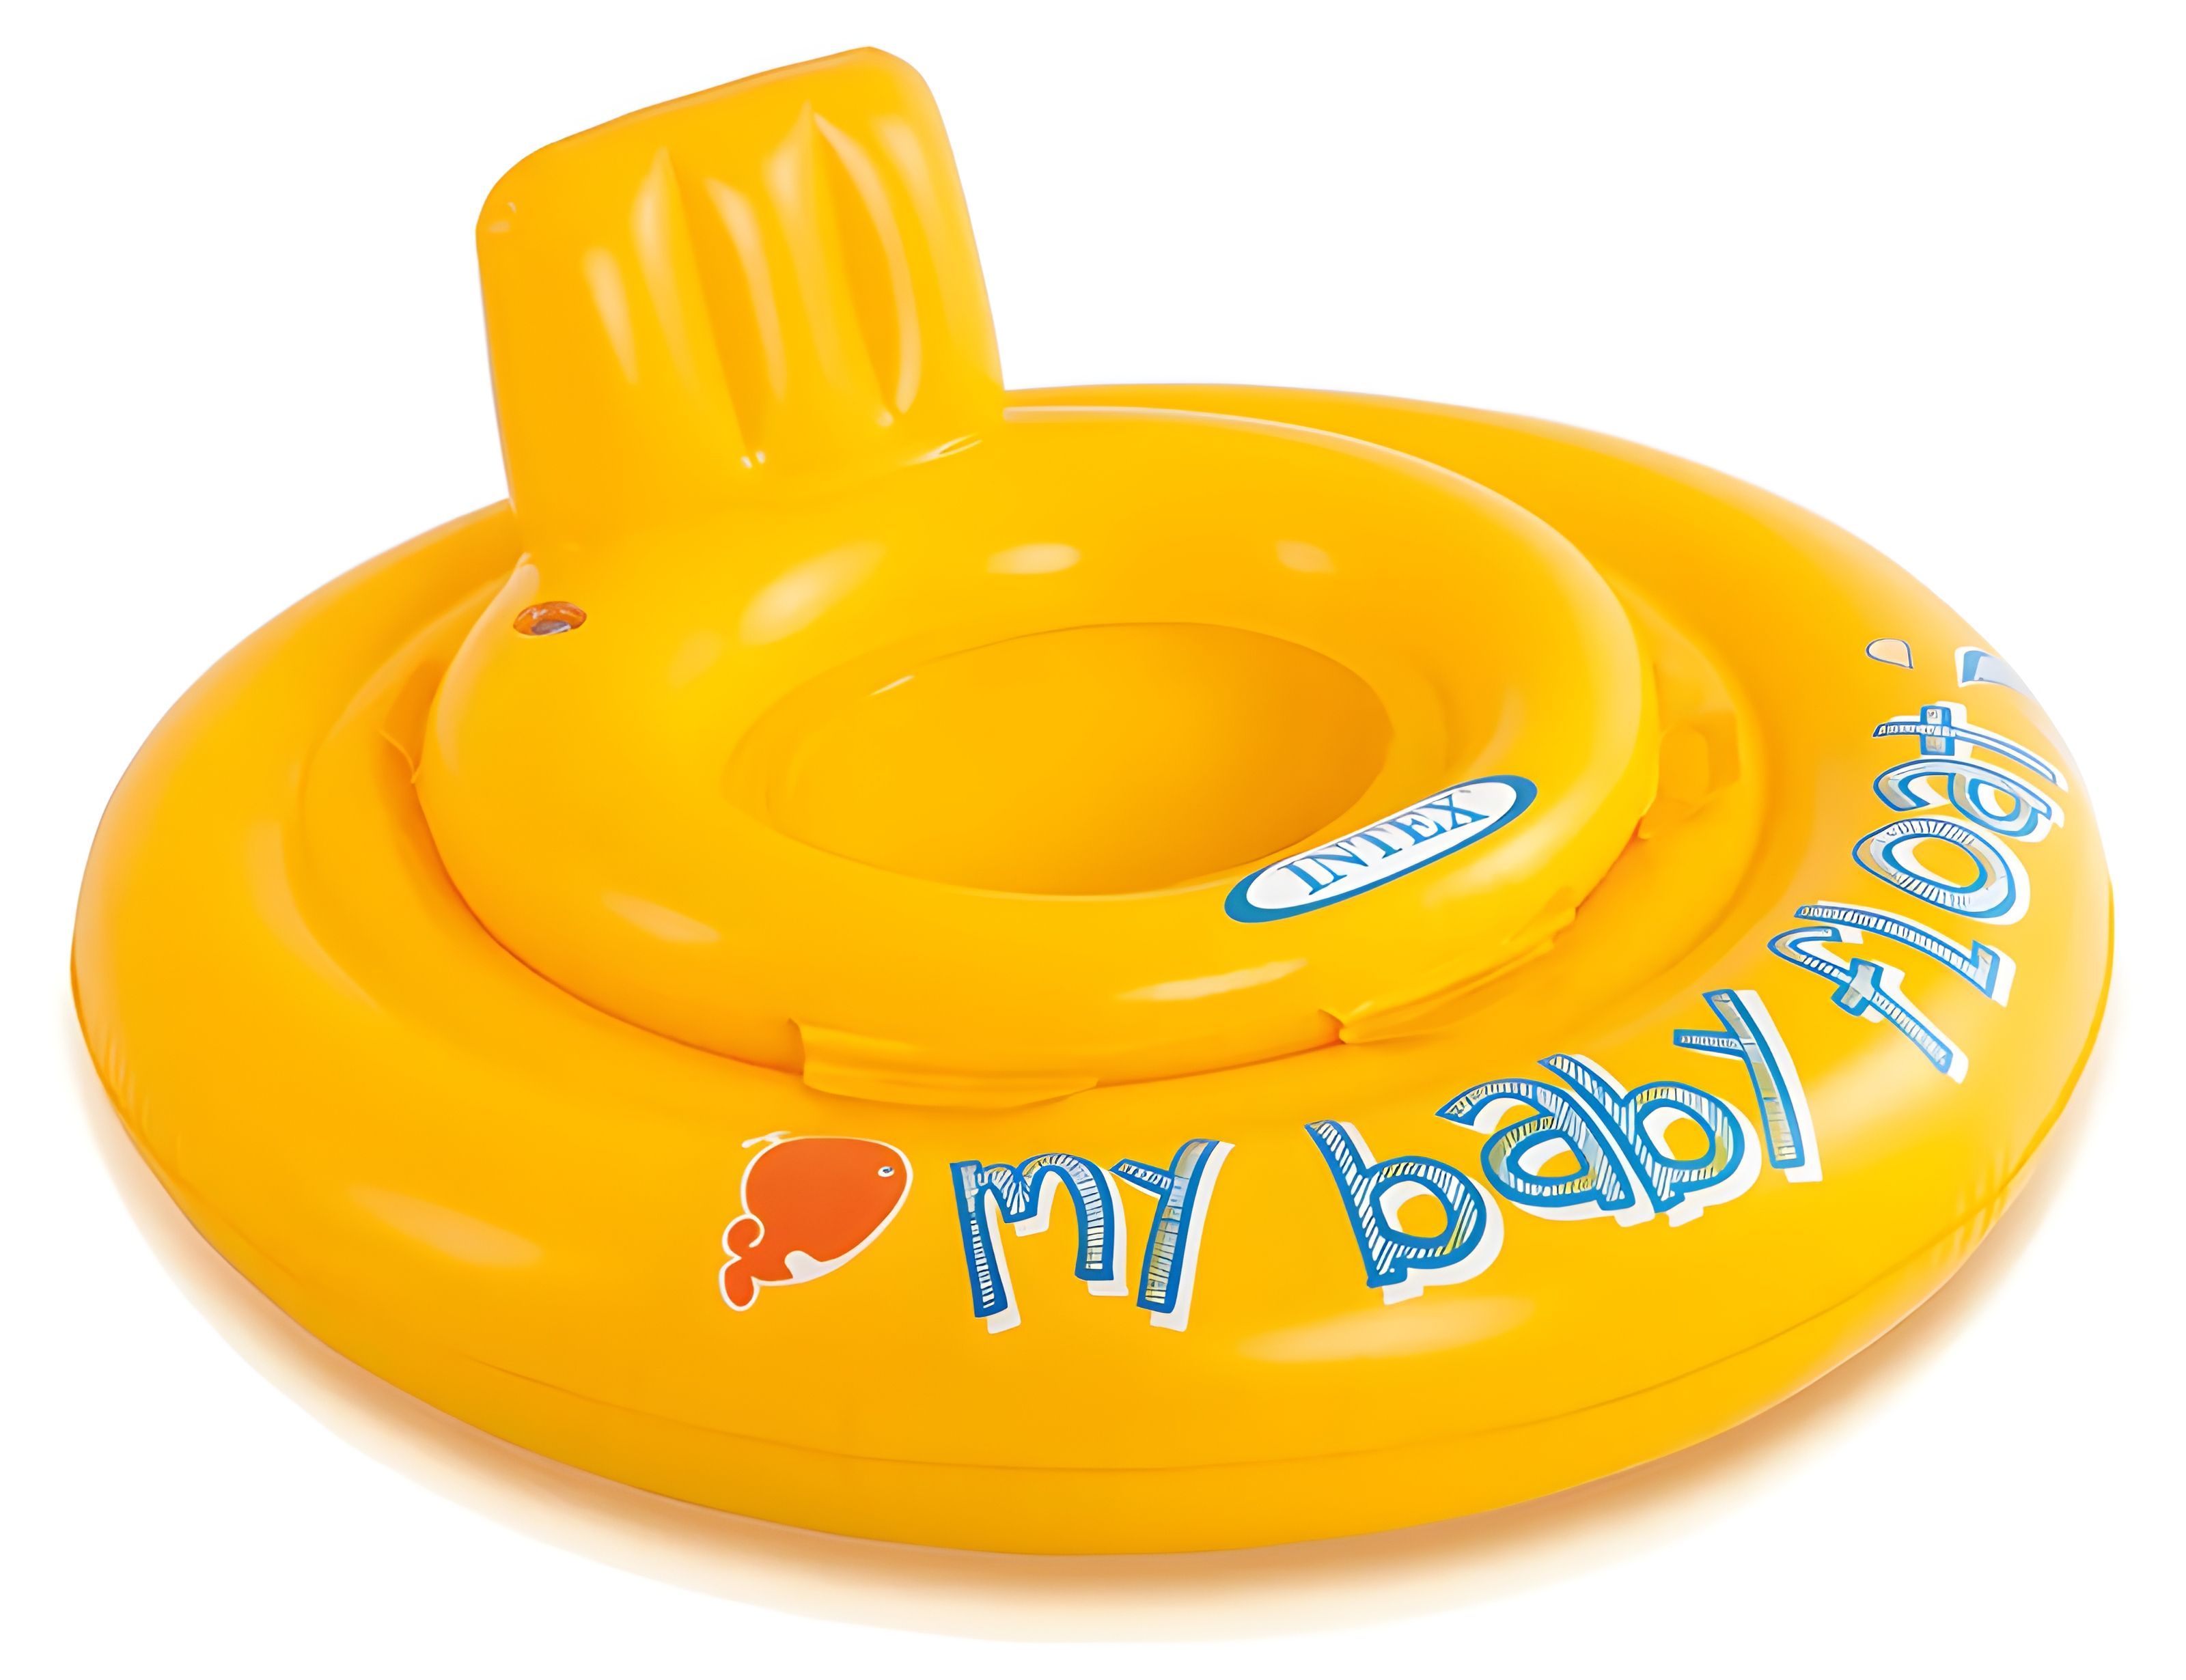 Надувные круги intex. 56585 Интекс. Надувные водные ходунки 70см "my Baby Float" Intex 56585eu. Круг для плавания my Baby Float, с сиденьем, d=70 см, от 6-12 месяцев, 56585np Intex. Надувной круг Intex my Baby Float 59574.